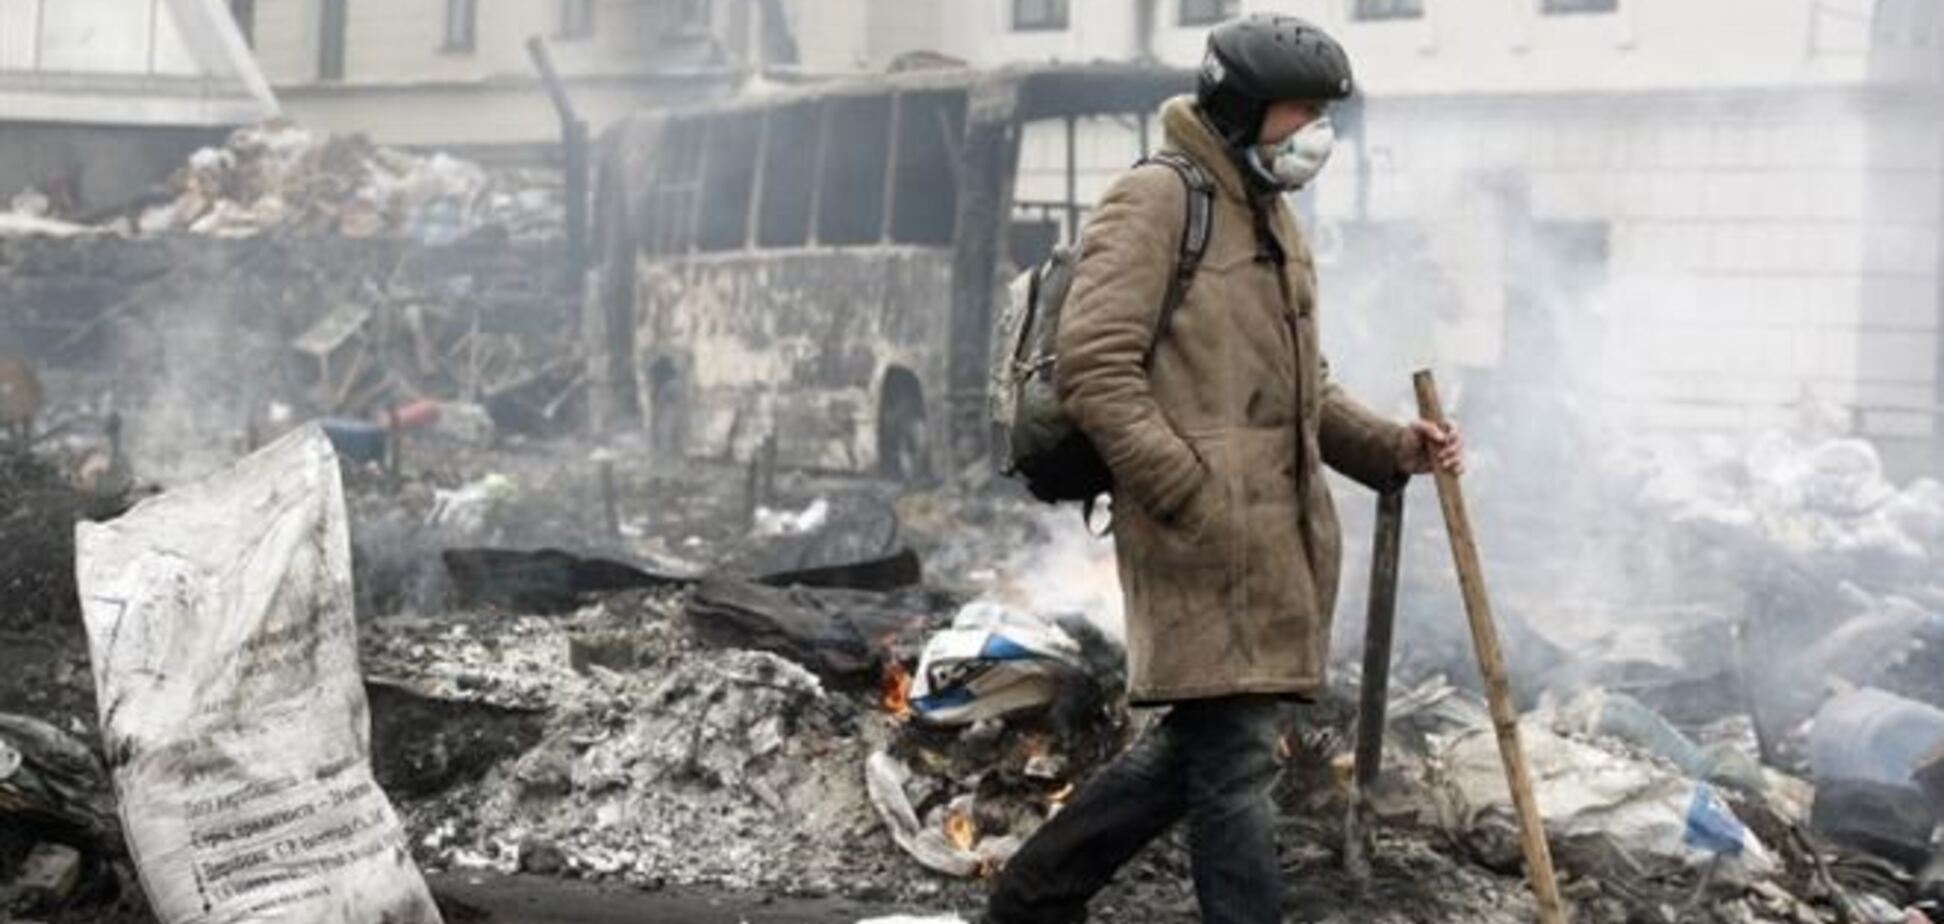 США могут отменить санкции против властей Украины после урегулирования кризиса